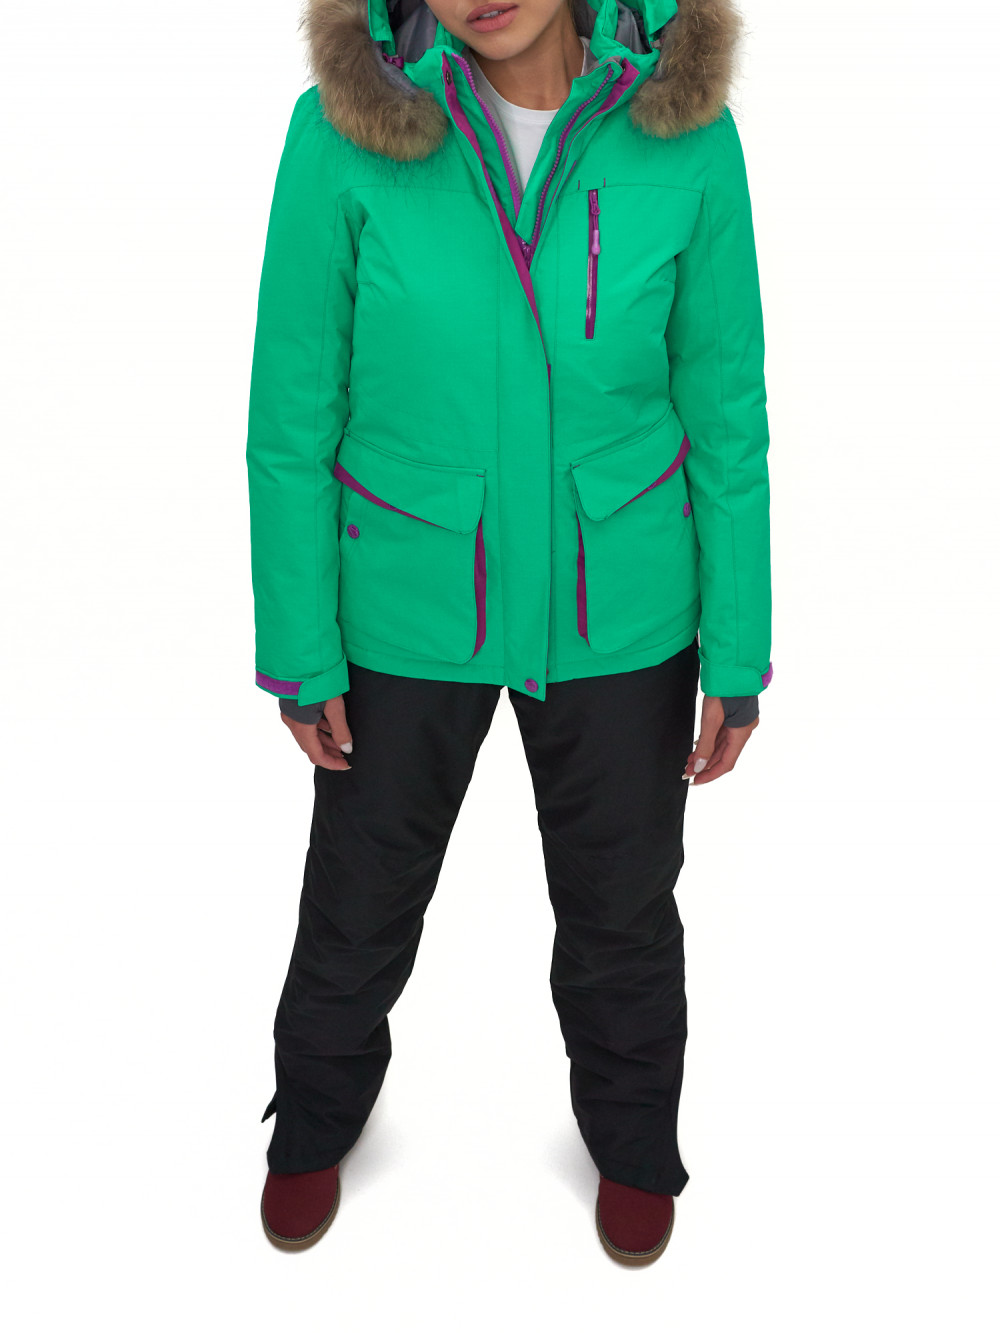 Спортивная куртка женская SkiingBird AD551777 зеленая XXL